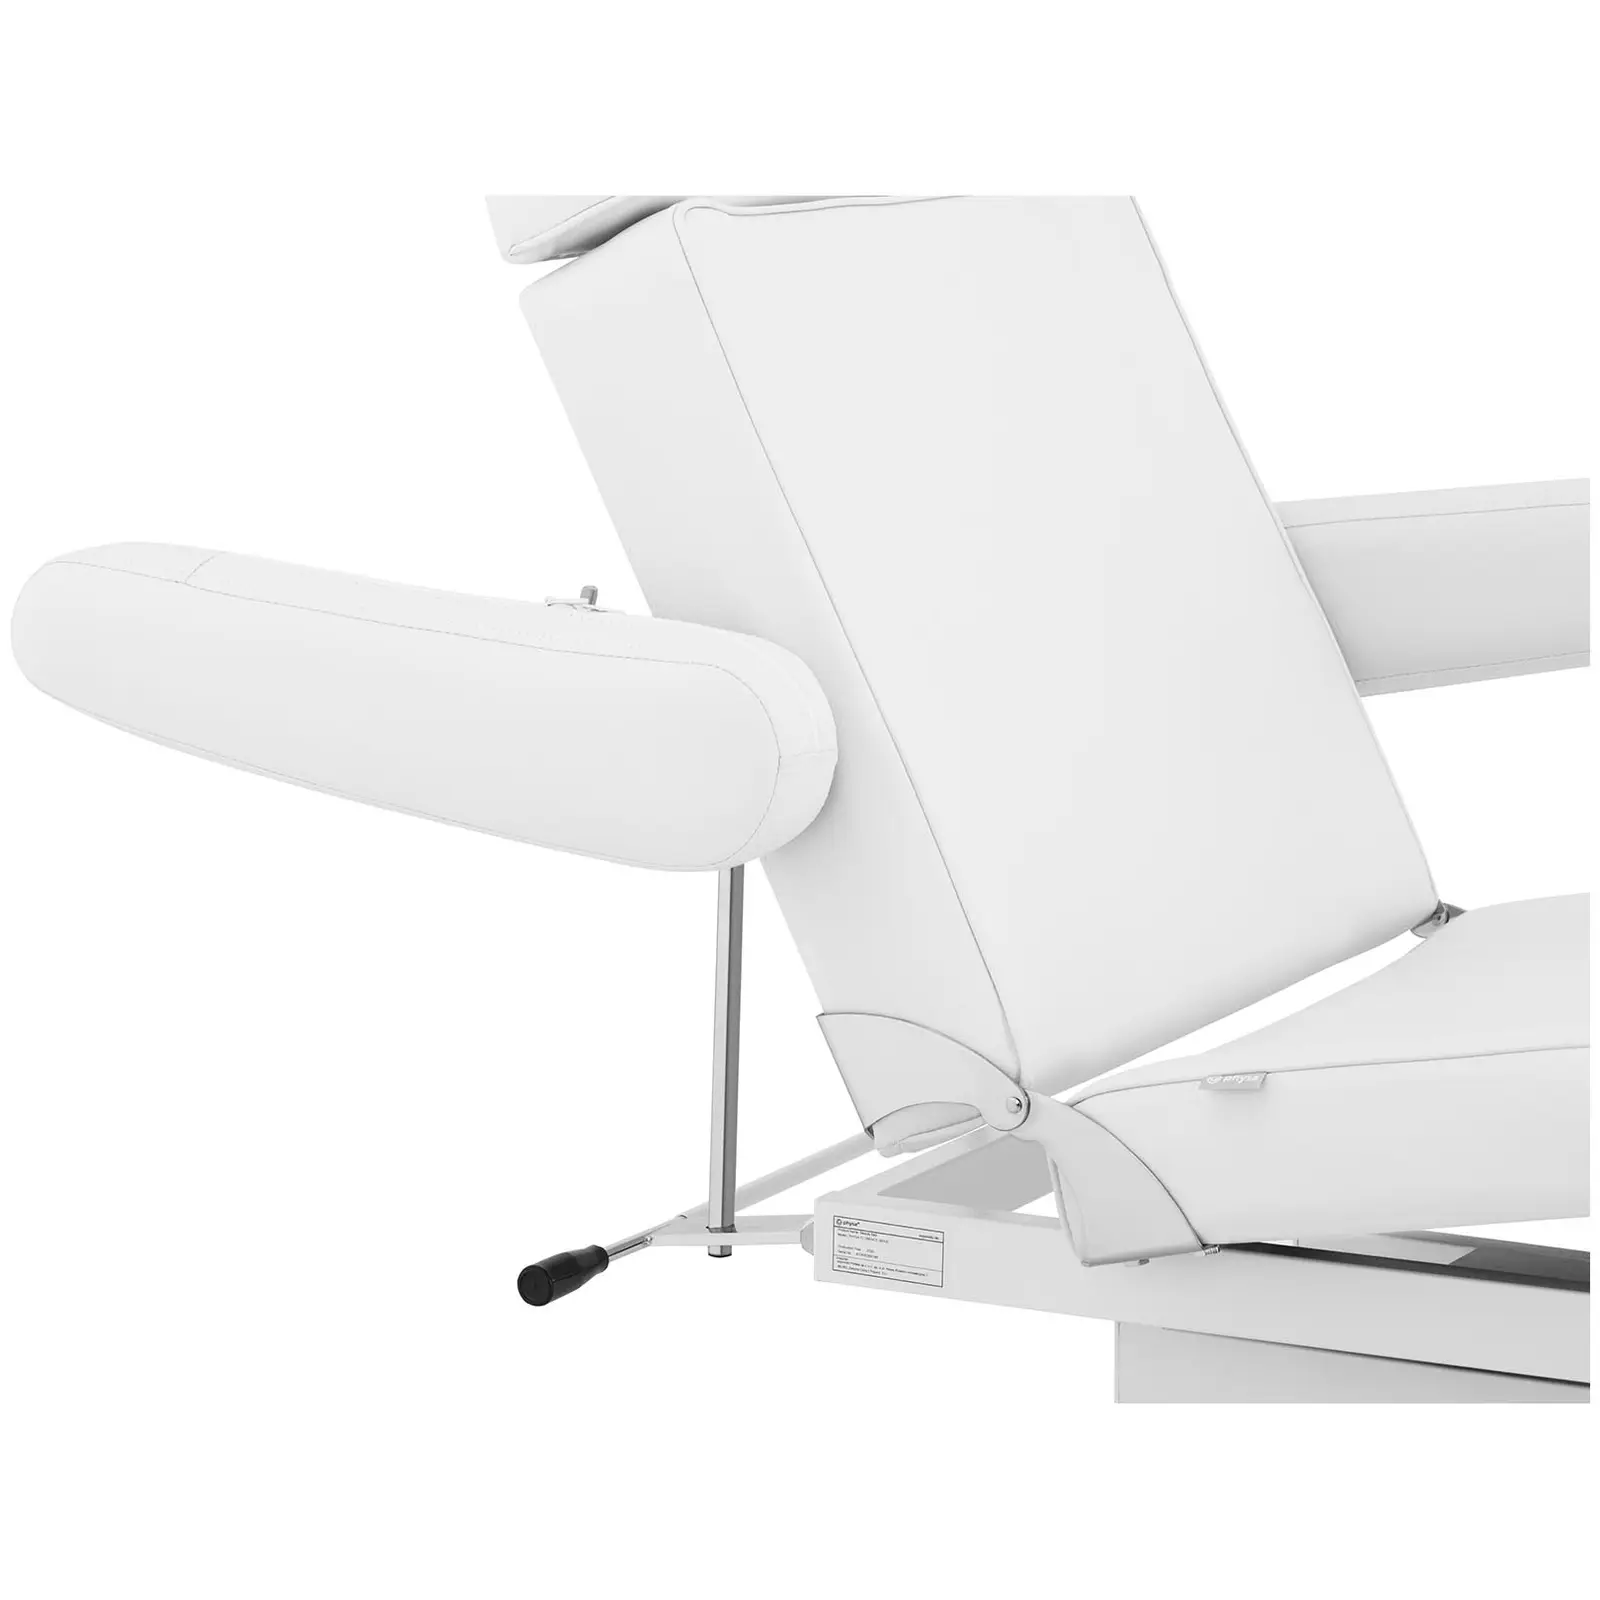 Cadeira para pedicure - 197 x 61.5 x 61 cm - 200 kg - Branco